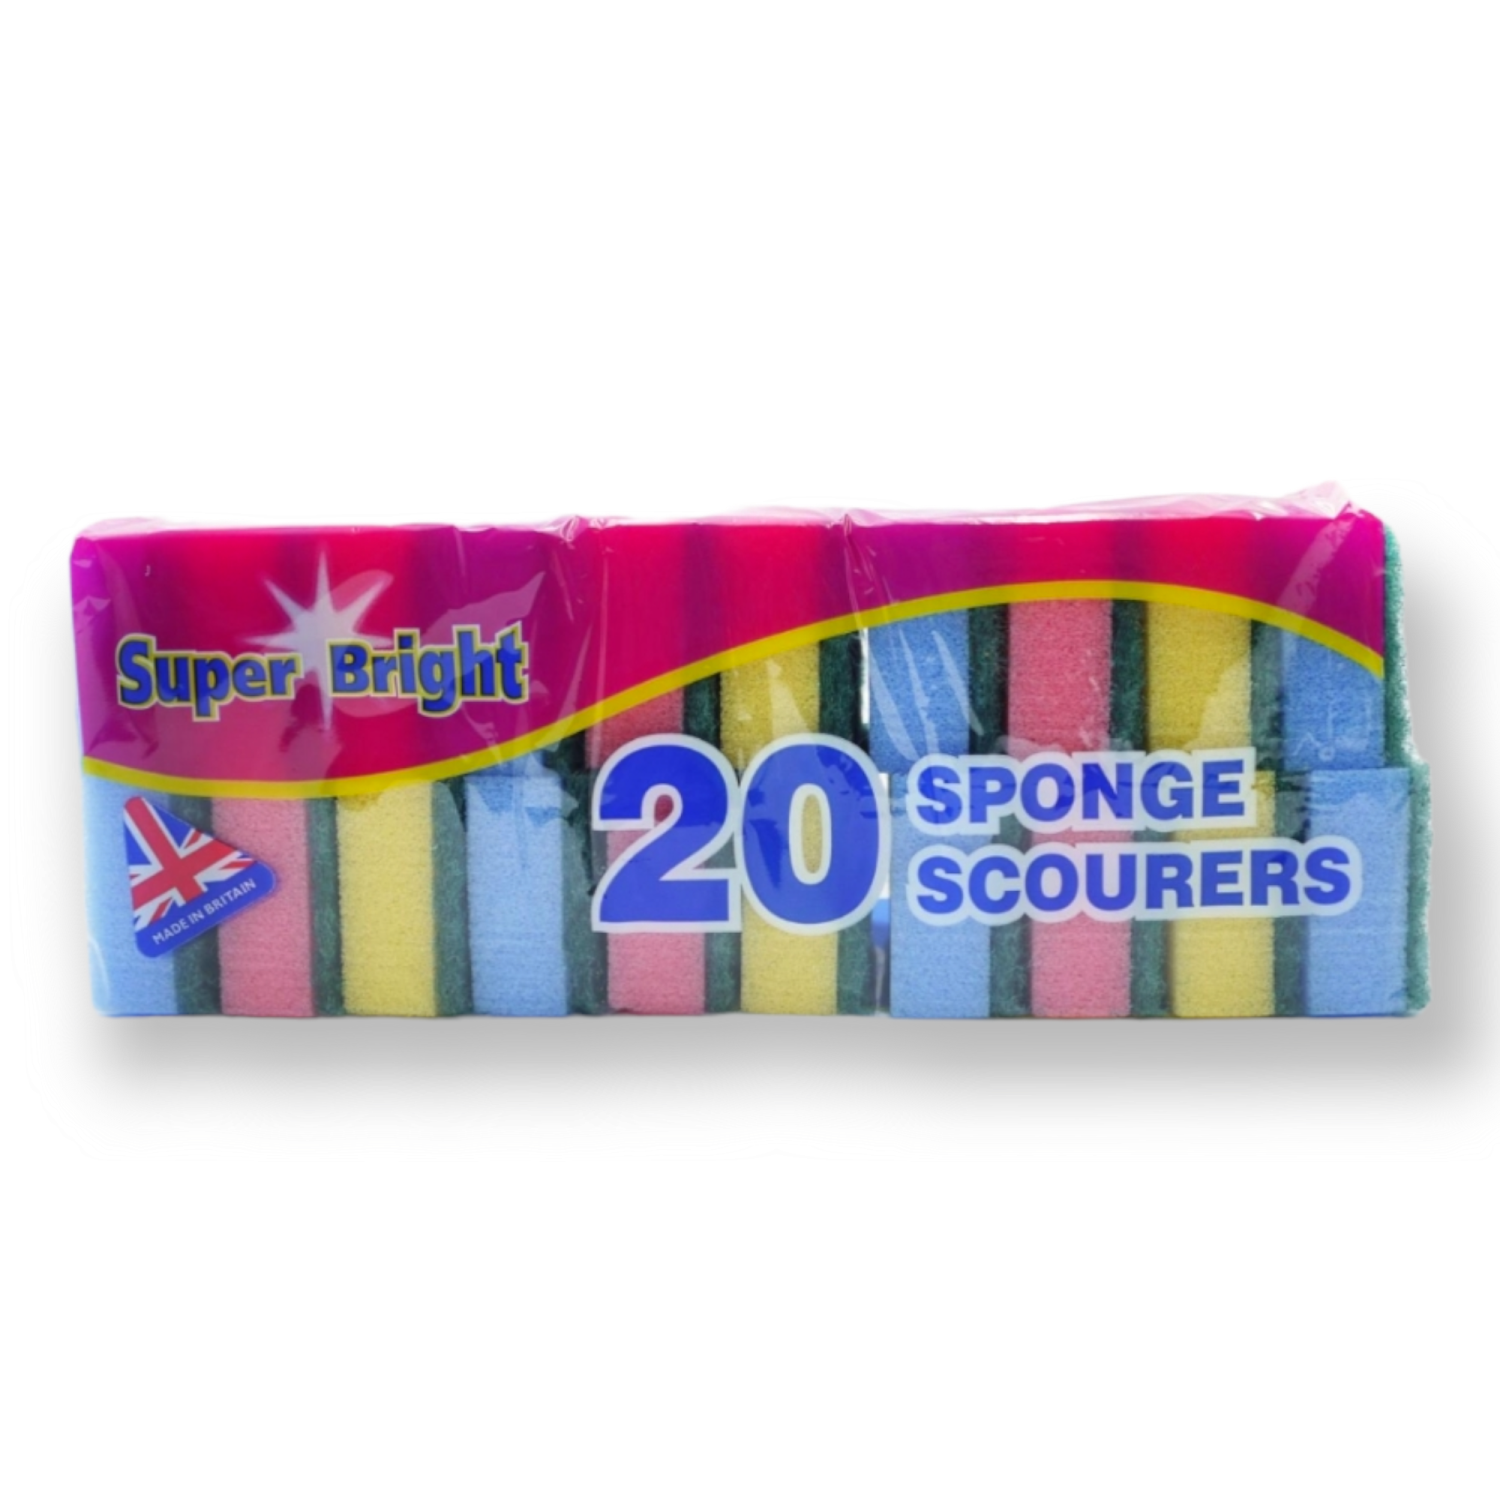 Super Bright Sponge Scourers Colour 20pk